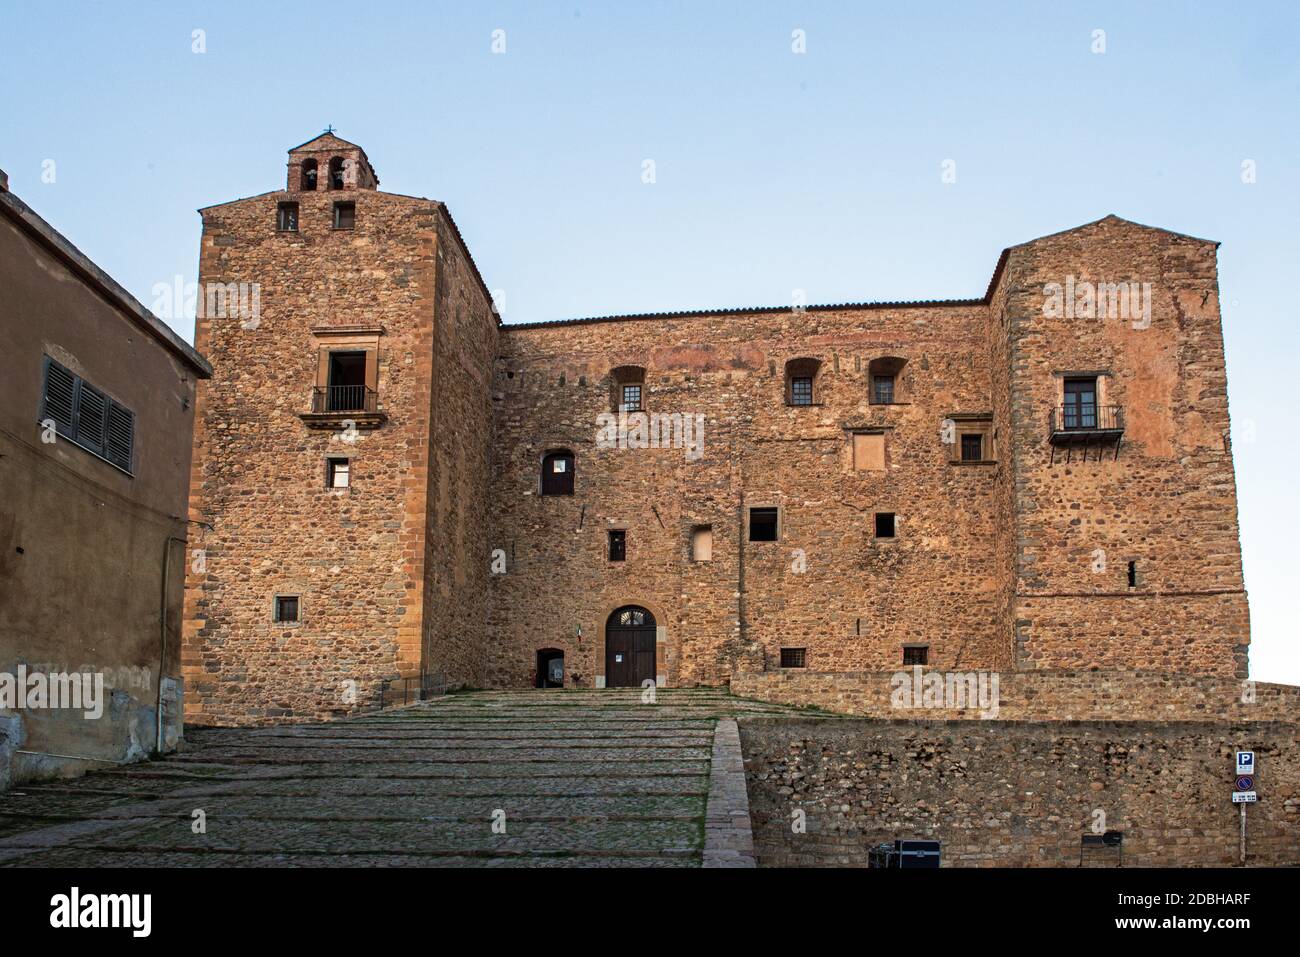 Castello di Castelbuono,Sicily Stock Photo